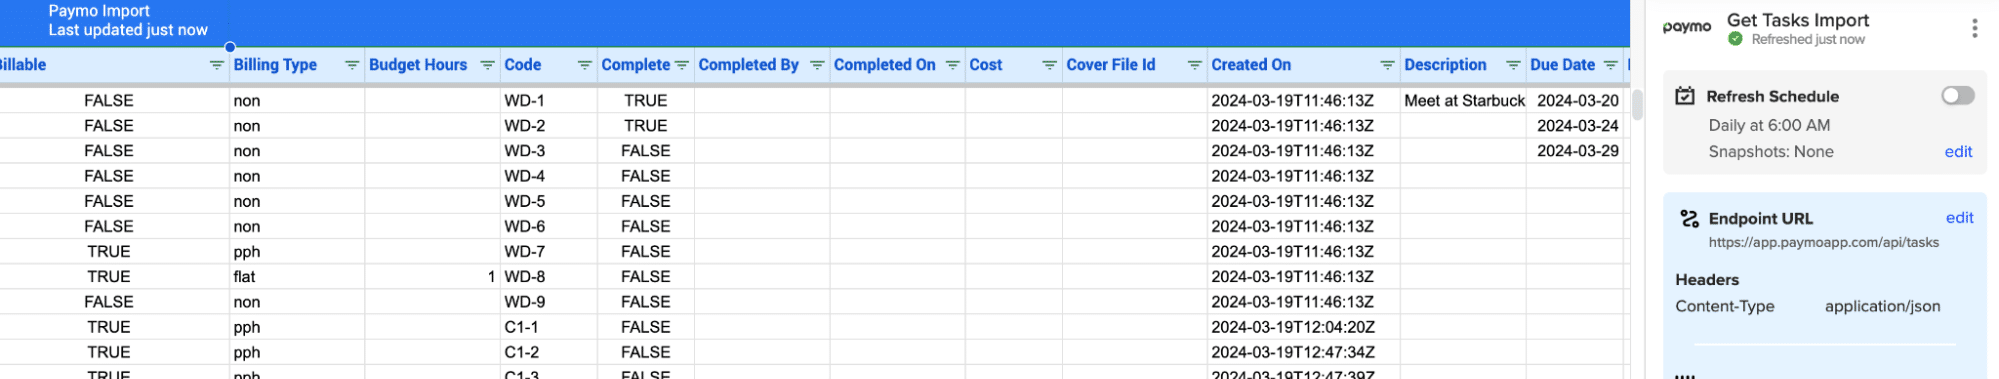 Paymo Tasks data in Excel.